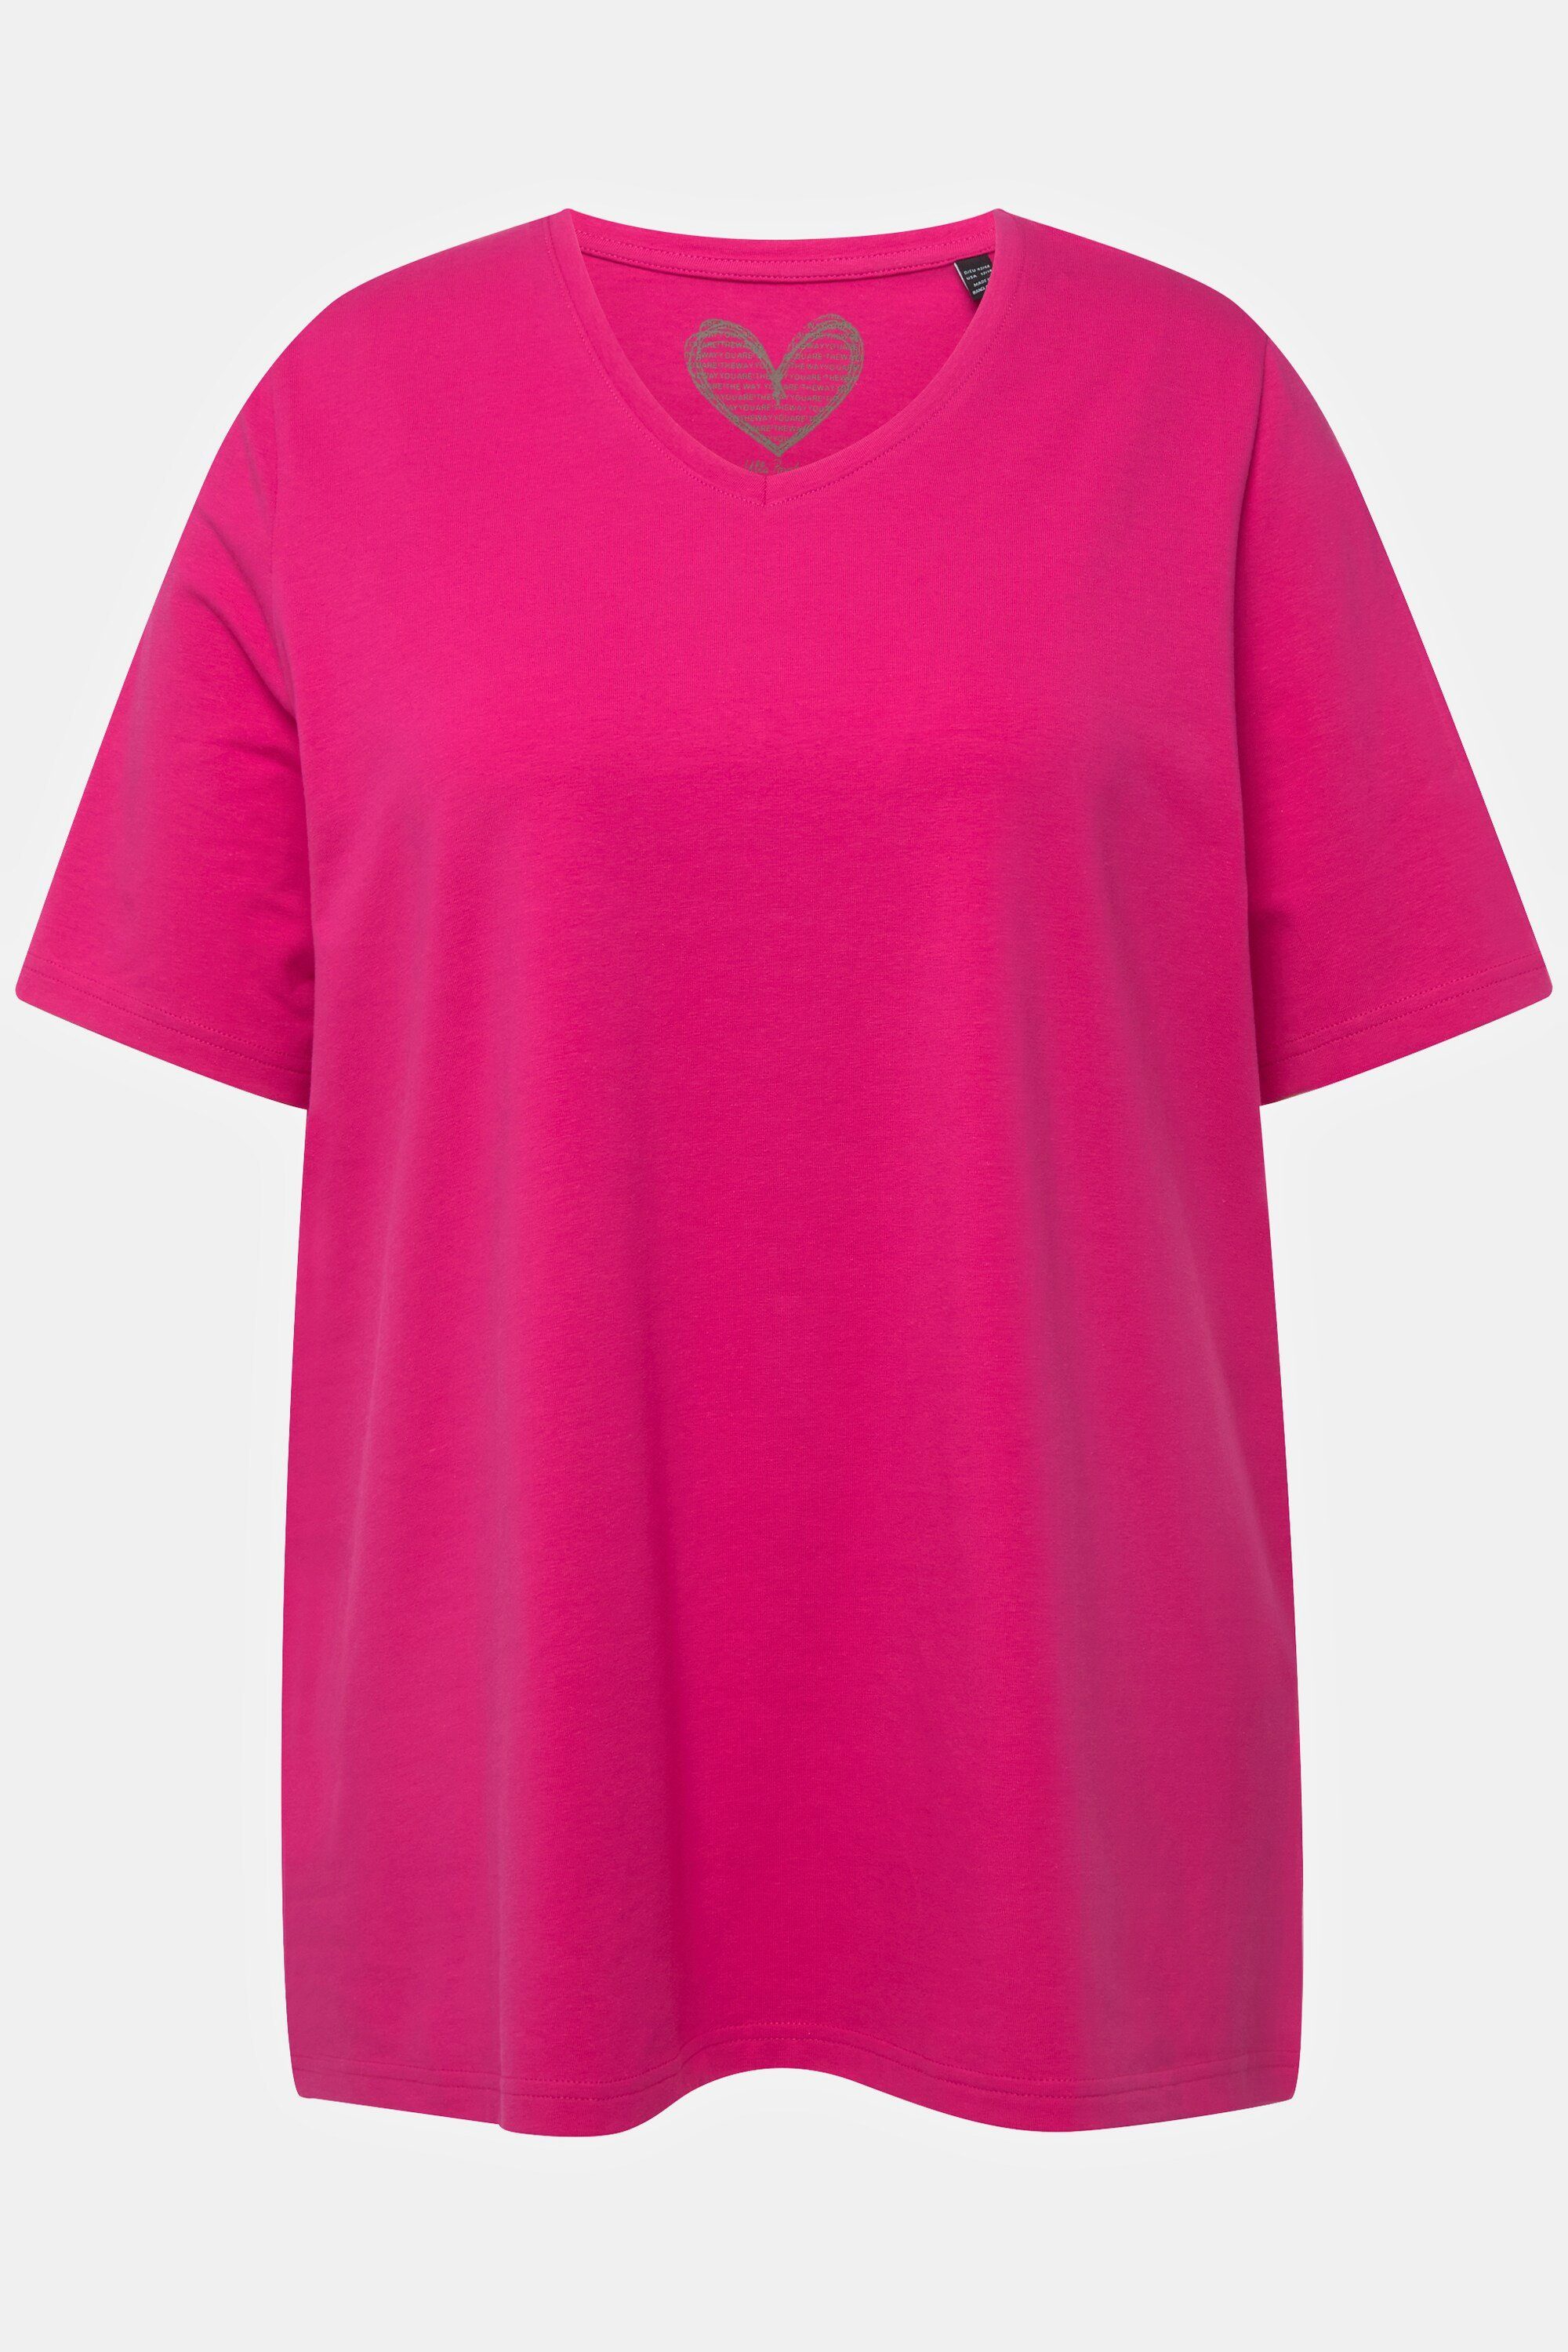 Ulla Popken Rundhalsshirt T-Shirt Halbarm A-Linie V-Ausschnitt fuchsia pink